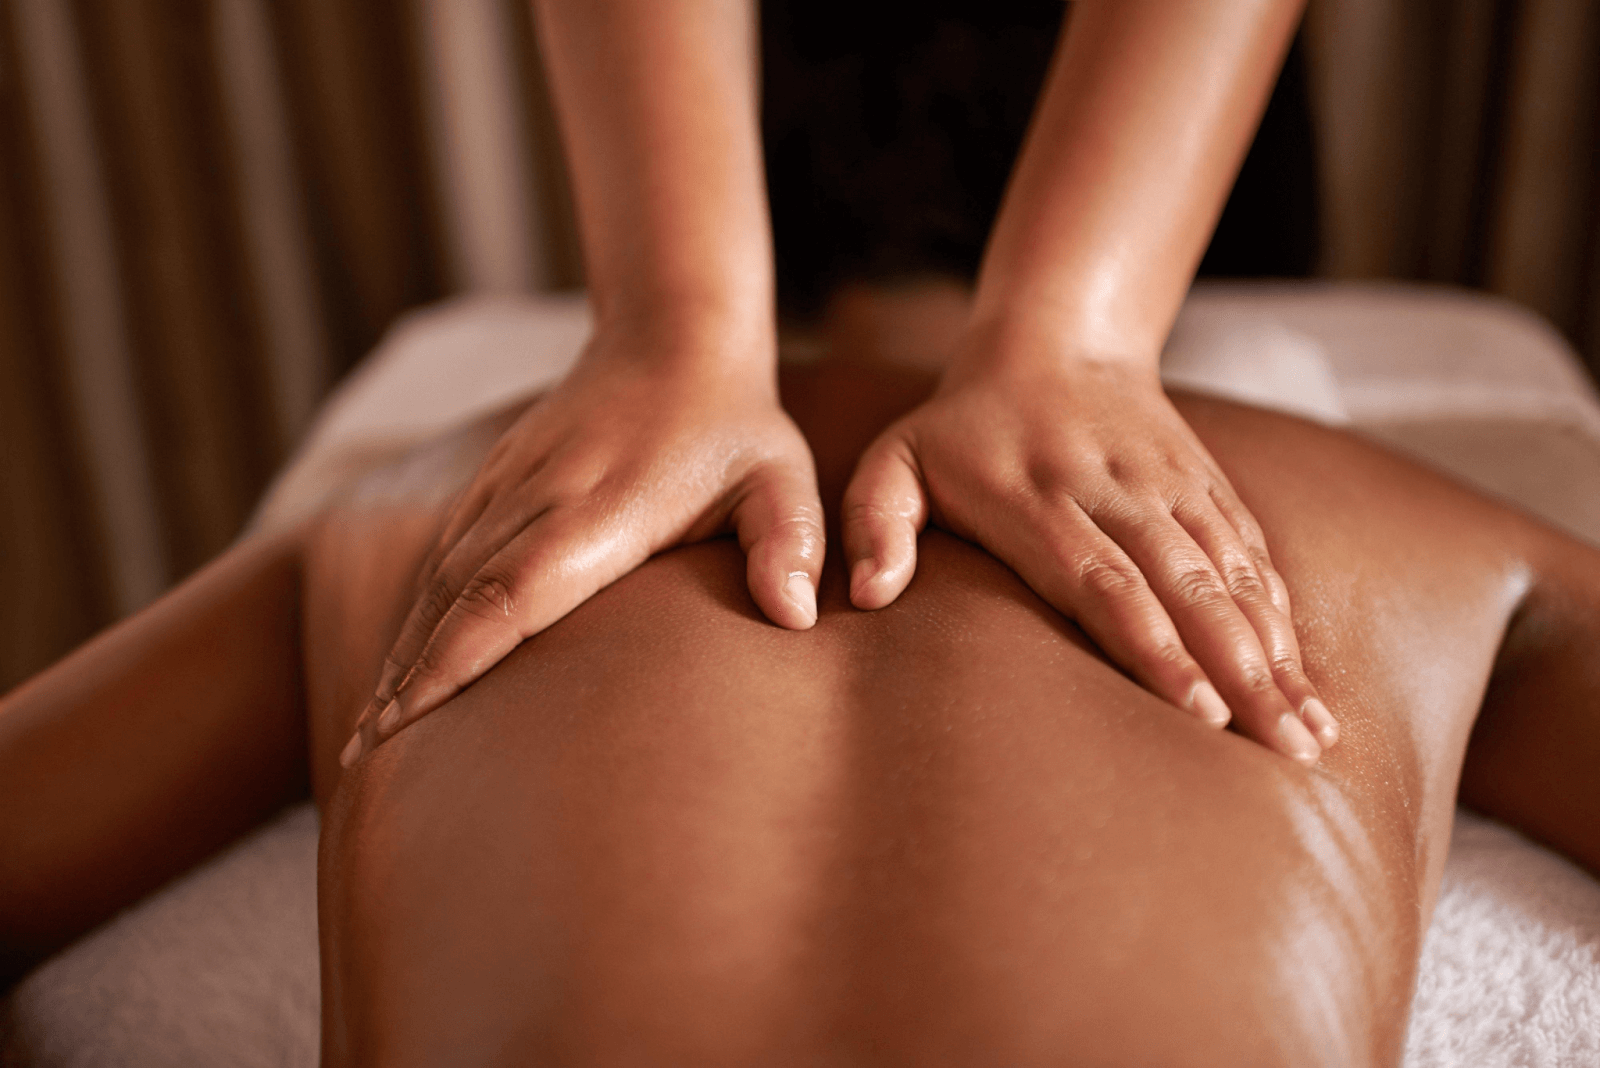 Para que serve a massagem nuru?